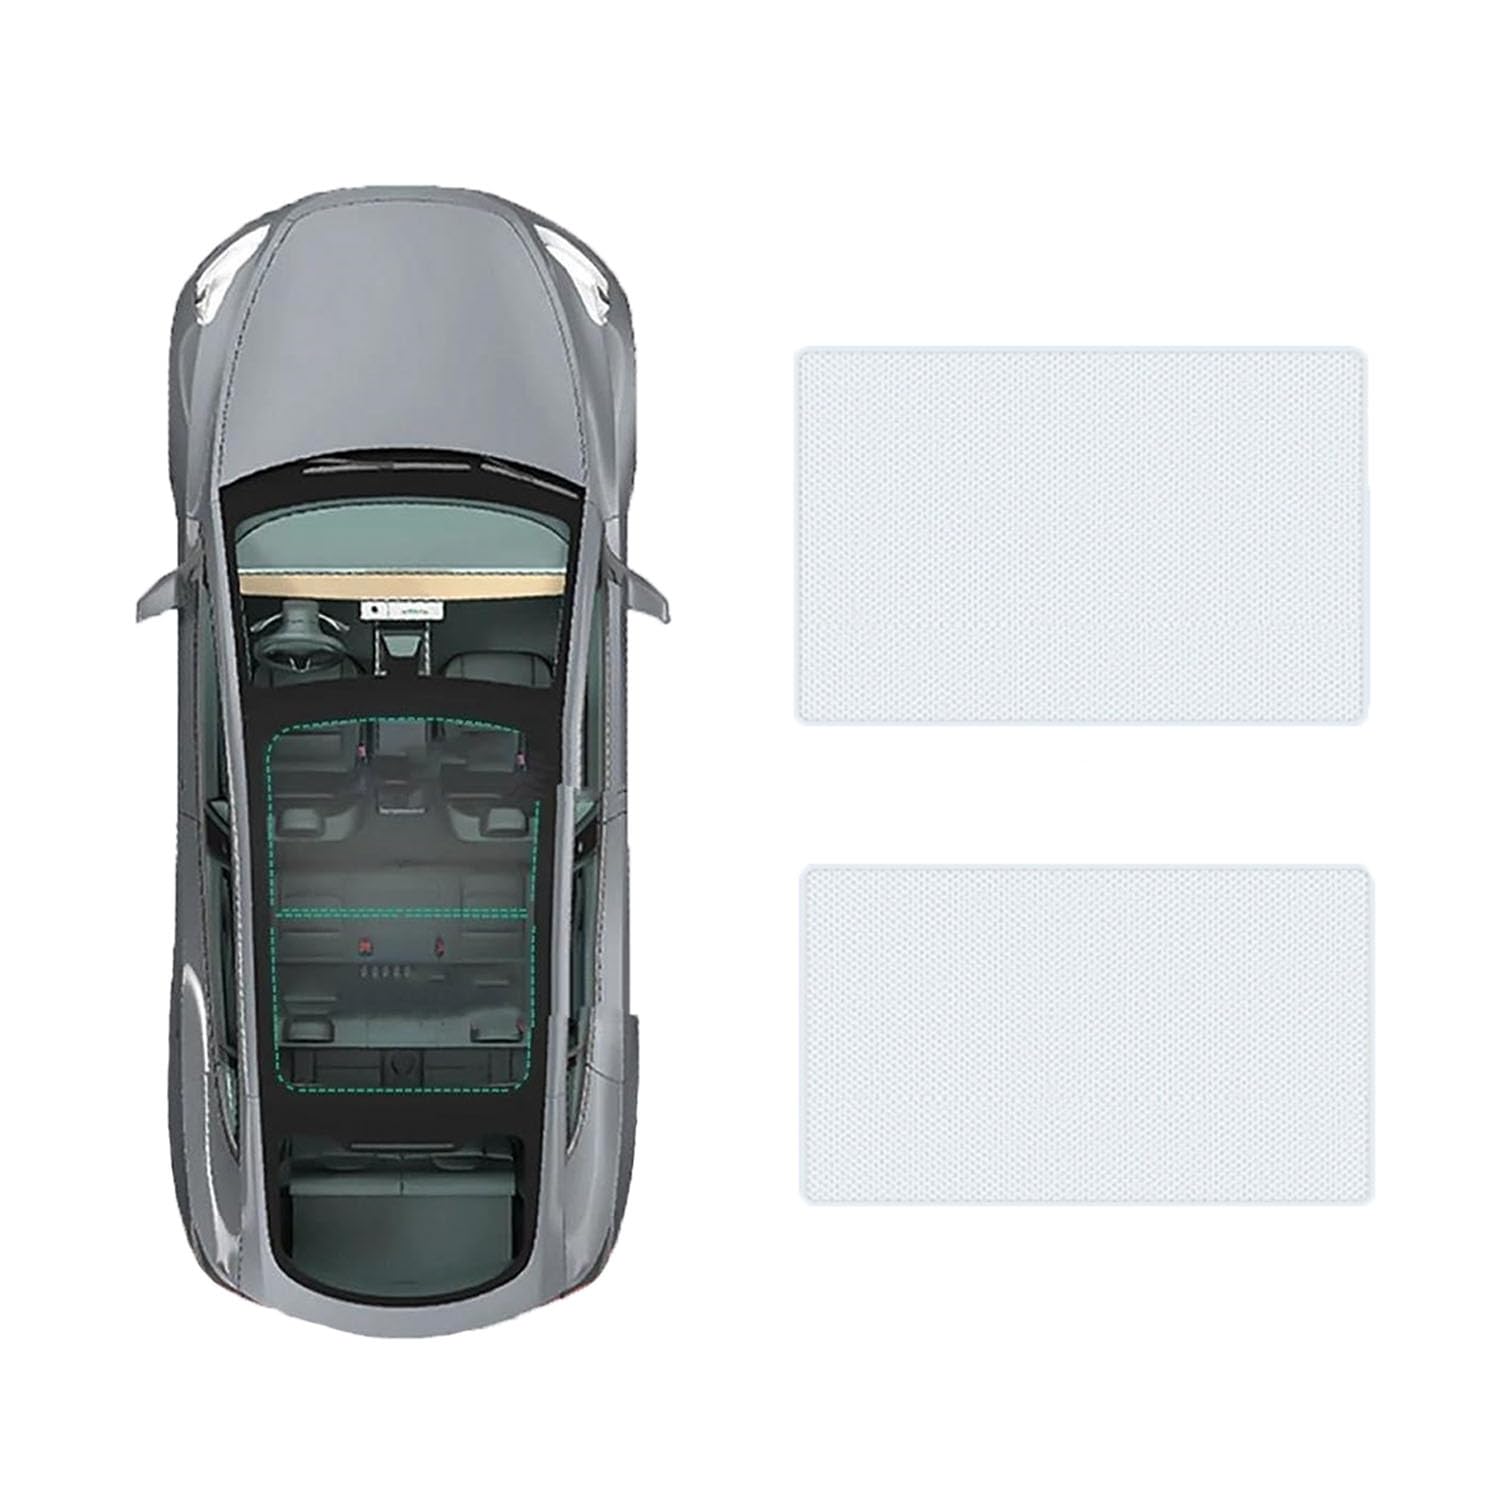 Für Buick Enclave 2020- Auto-Schiebedach-Beschattung,Dach Wärme Isolierung Anti-UV Visier Auto Zubehör,A-Gray white regular Style von ANRAM